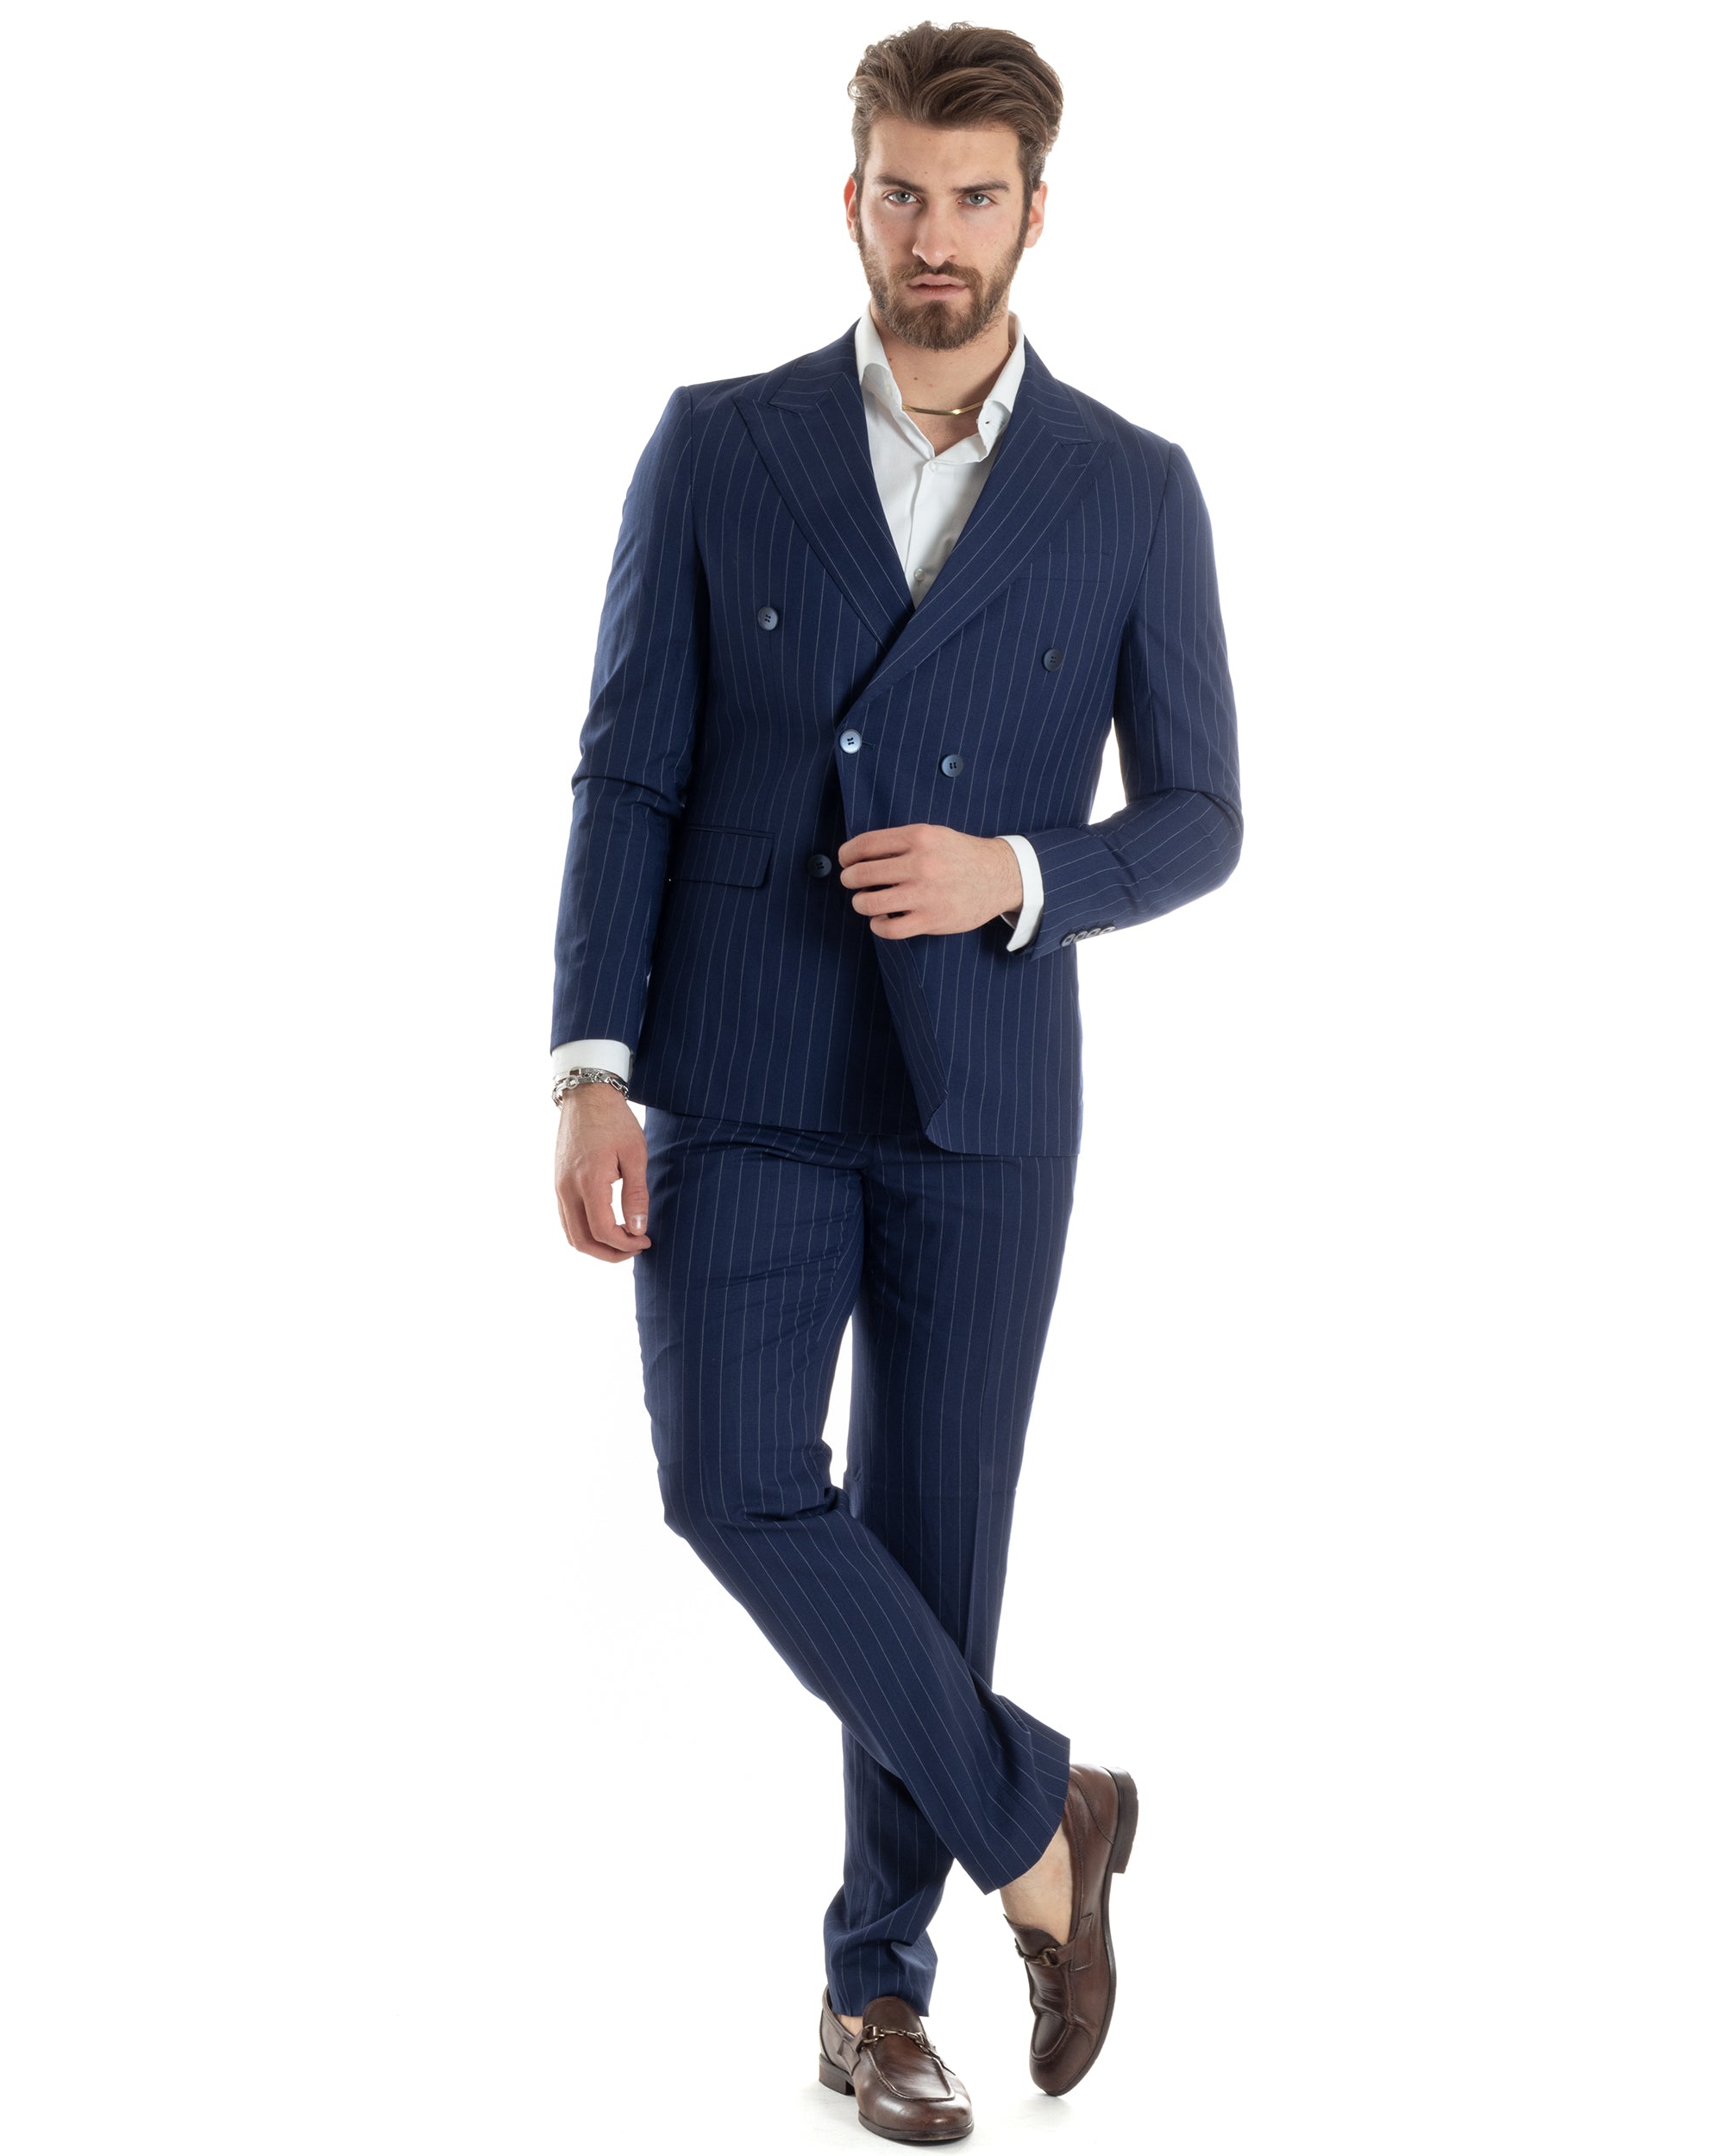 Abito Uomo Doppiopetto Vestito Completo Giacca Pantaloni Blu Gessato Elegante Casual GIOSAL-AE1027A